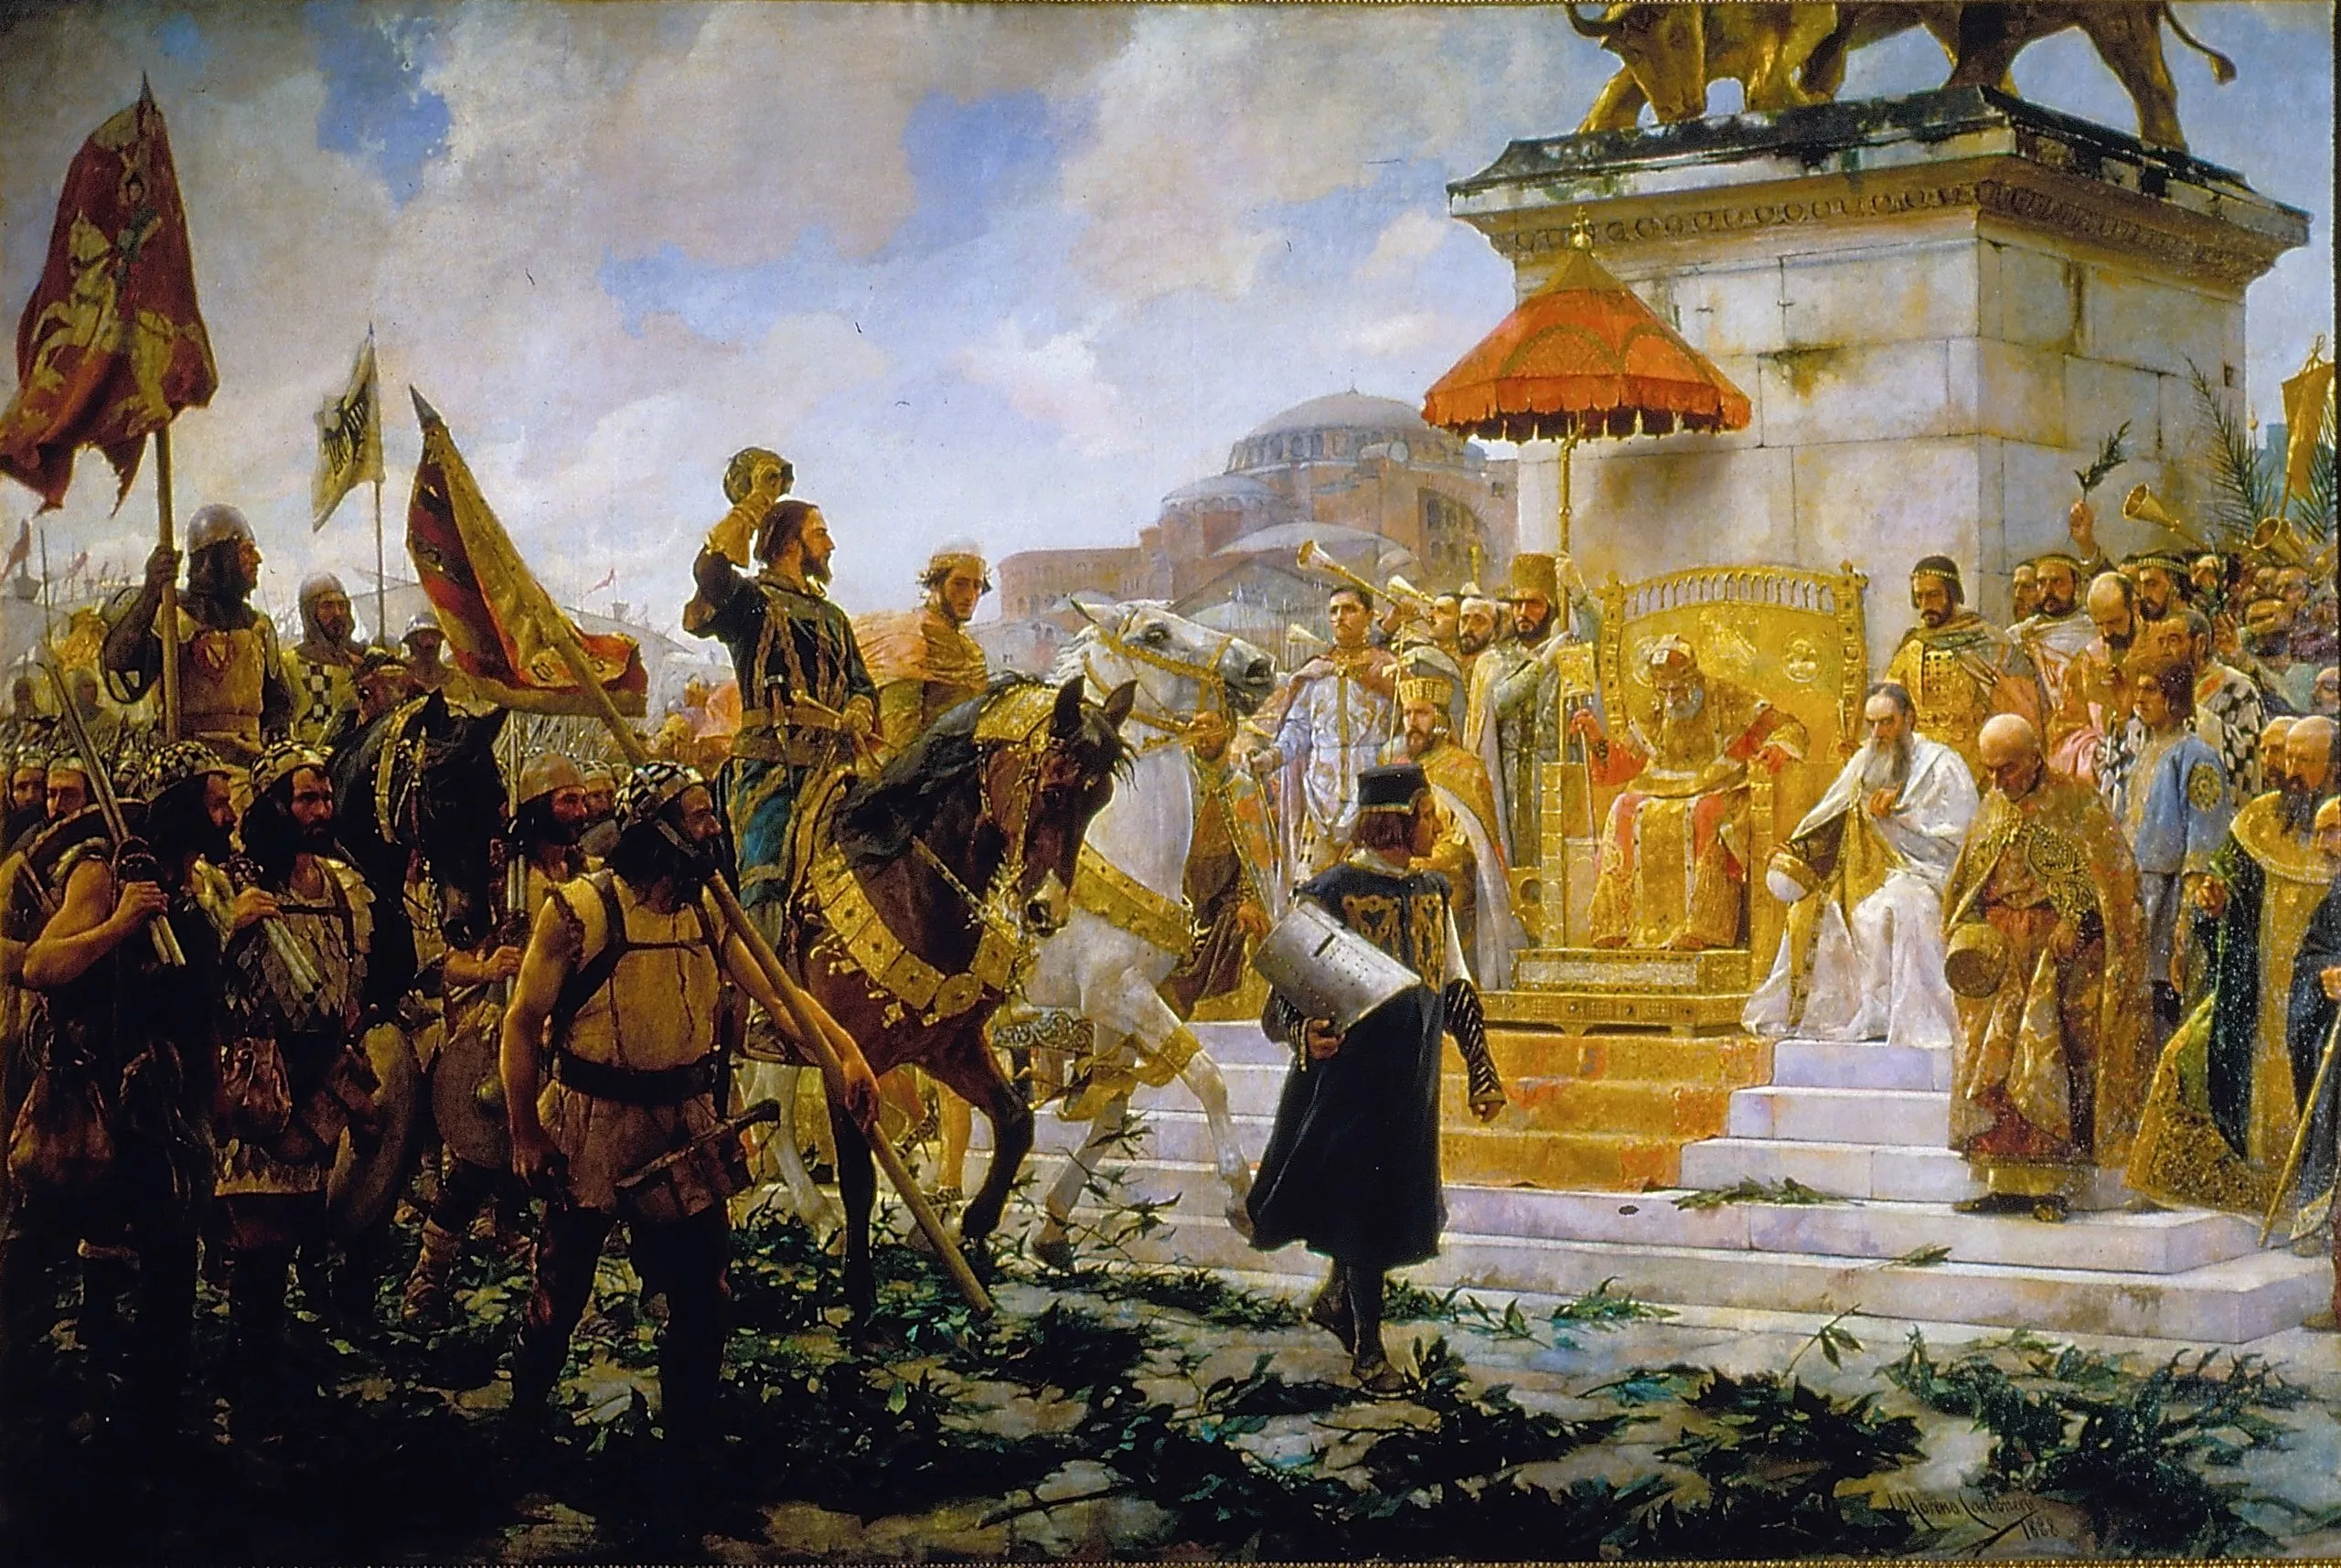 Roger, amb els atributs de megaduc (capell, senyera i vara d’or), és rebut per l’emperador de Bizanci, que el saluda des del tron amb Santa Sofia al fons